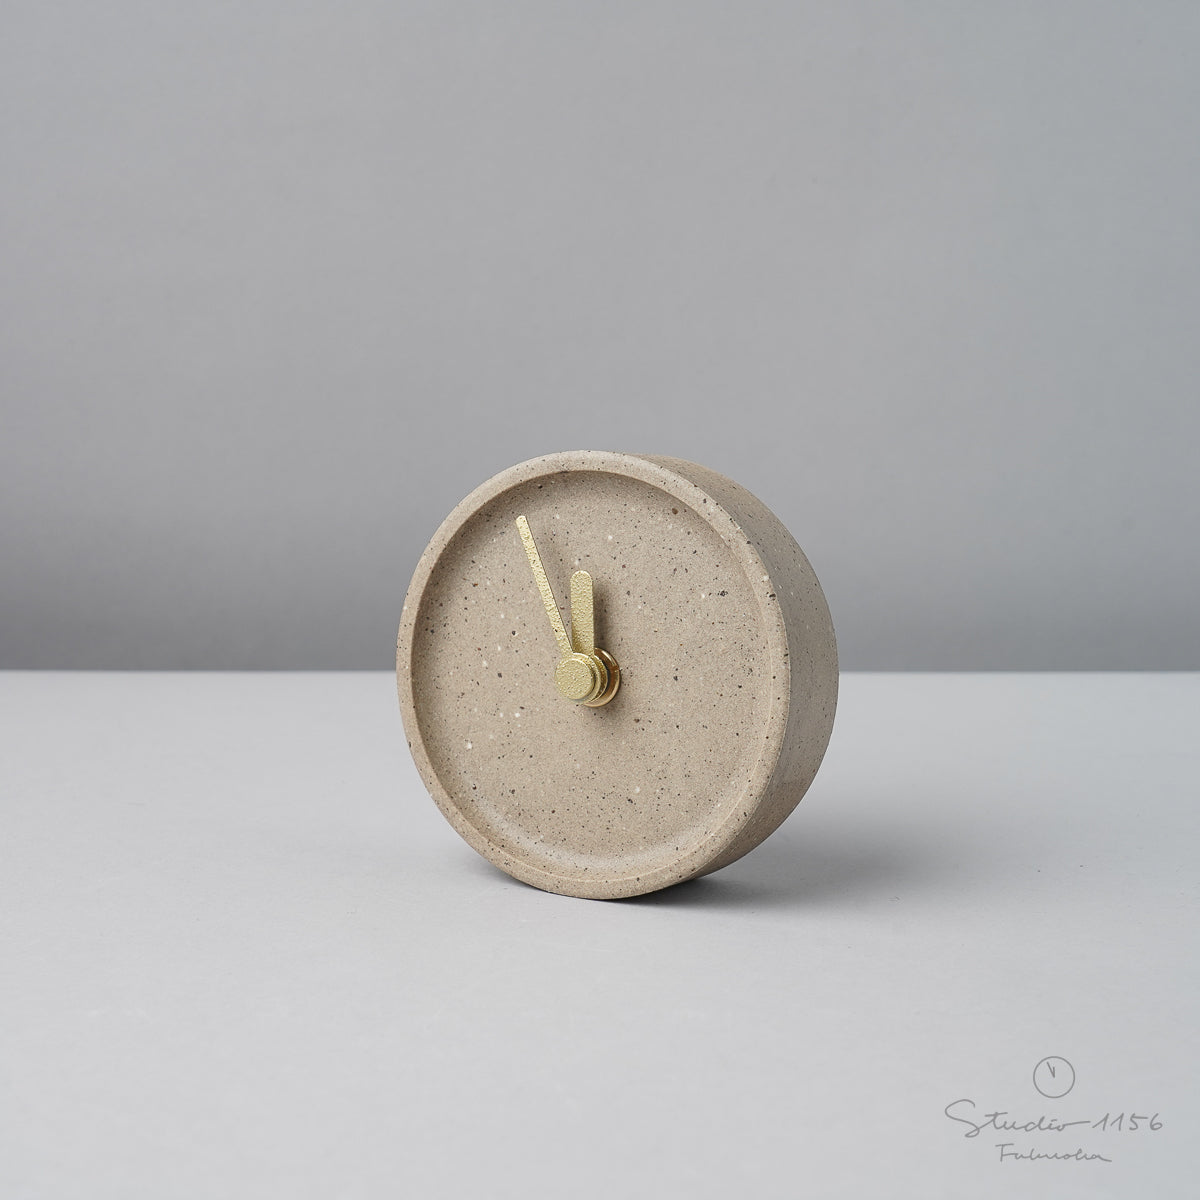 美濃焼 colon:antique 陶器時計 置き時計 電池付 うすちゃ(brown) SUGY Studio1156